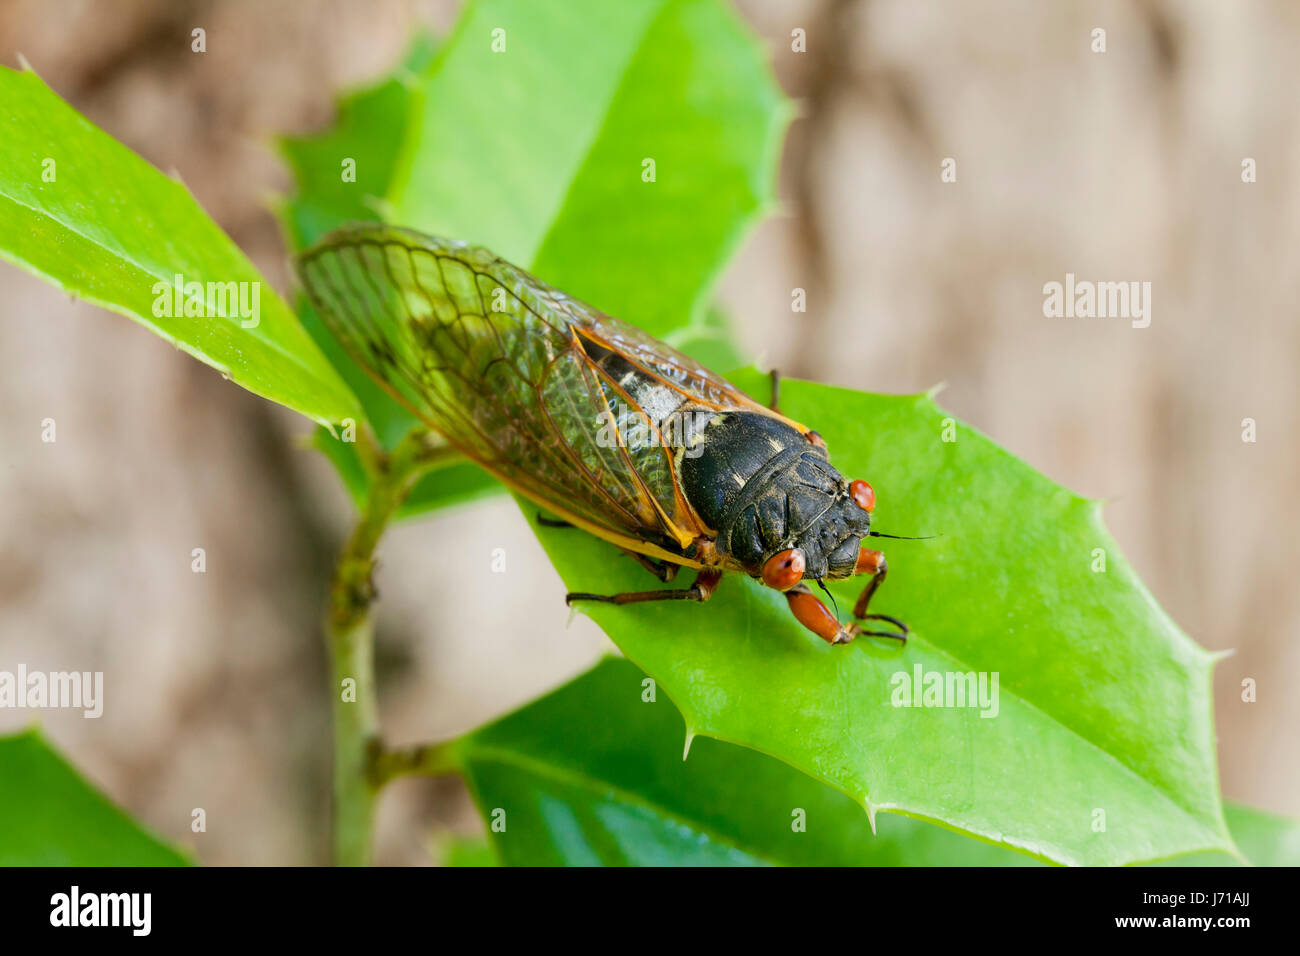 Brood X cicada (Magicicada), May 2017 - Virginia USA Stock Photo